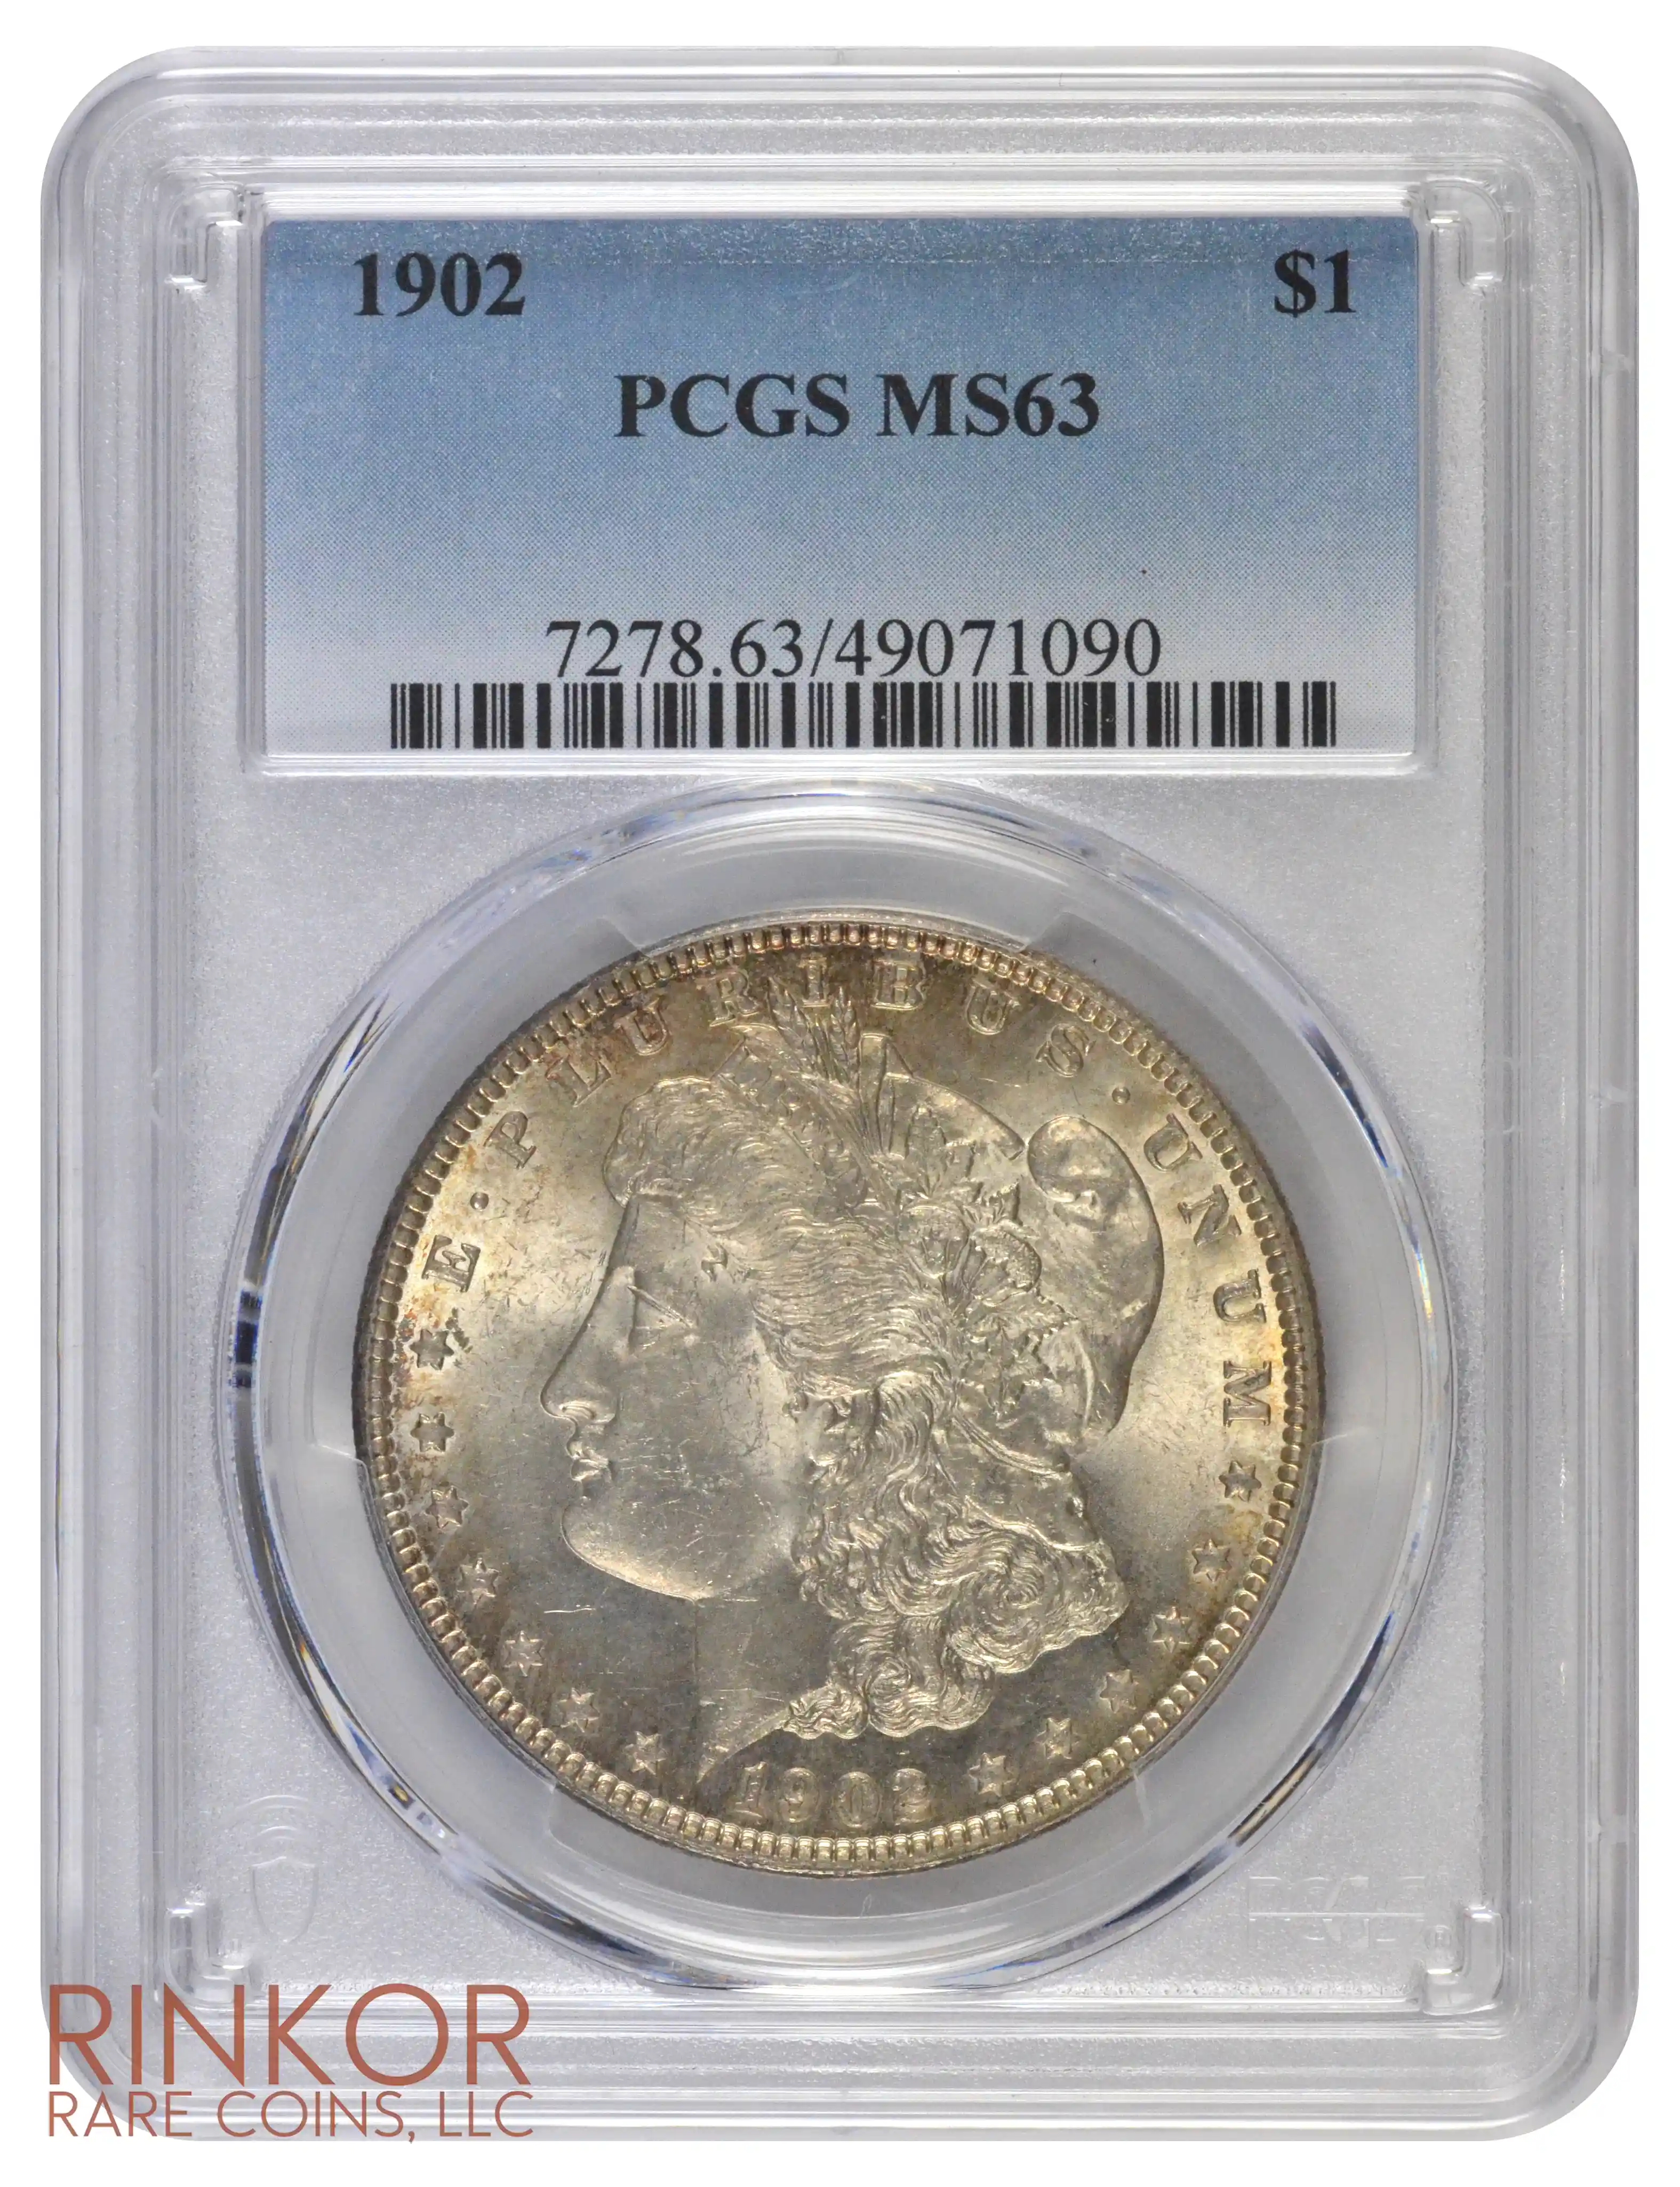 1902 $1 PCGS MS 63